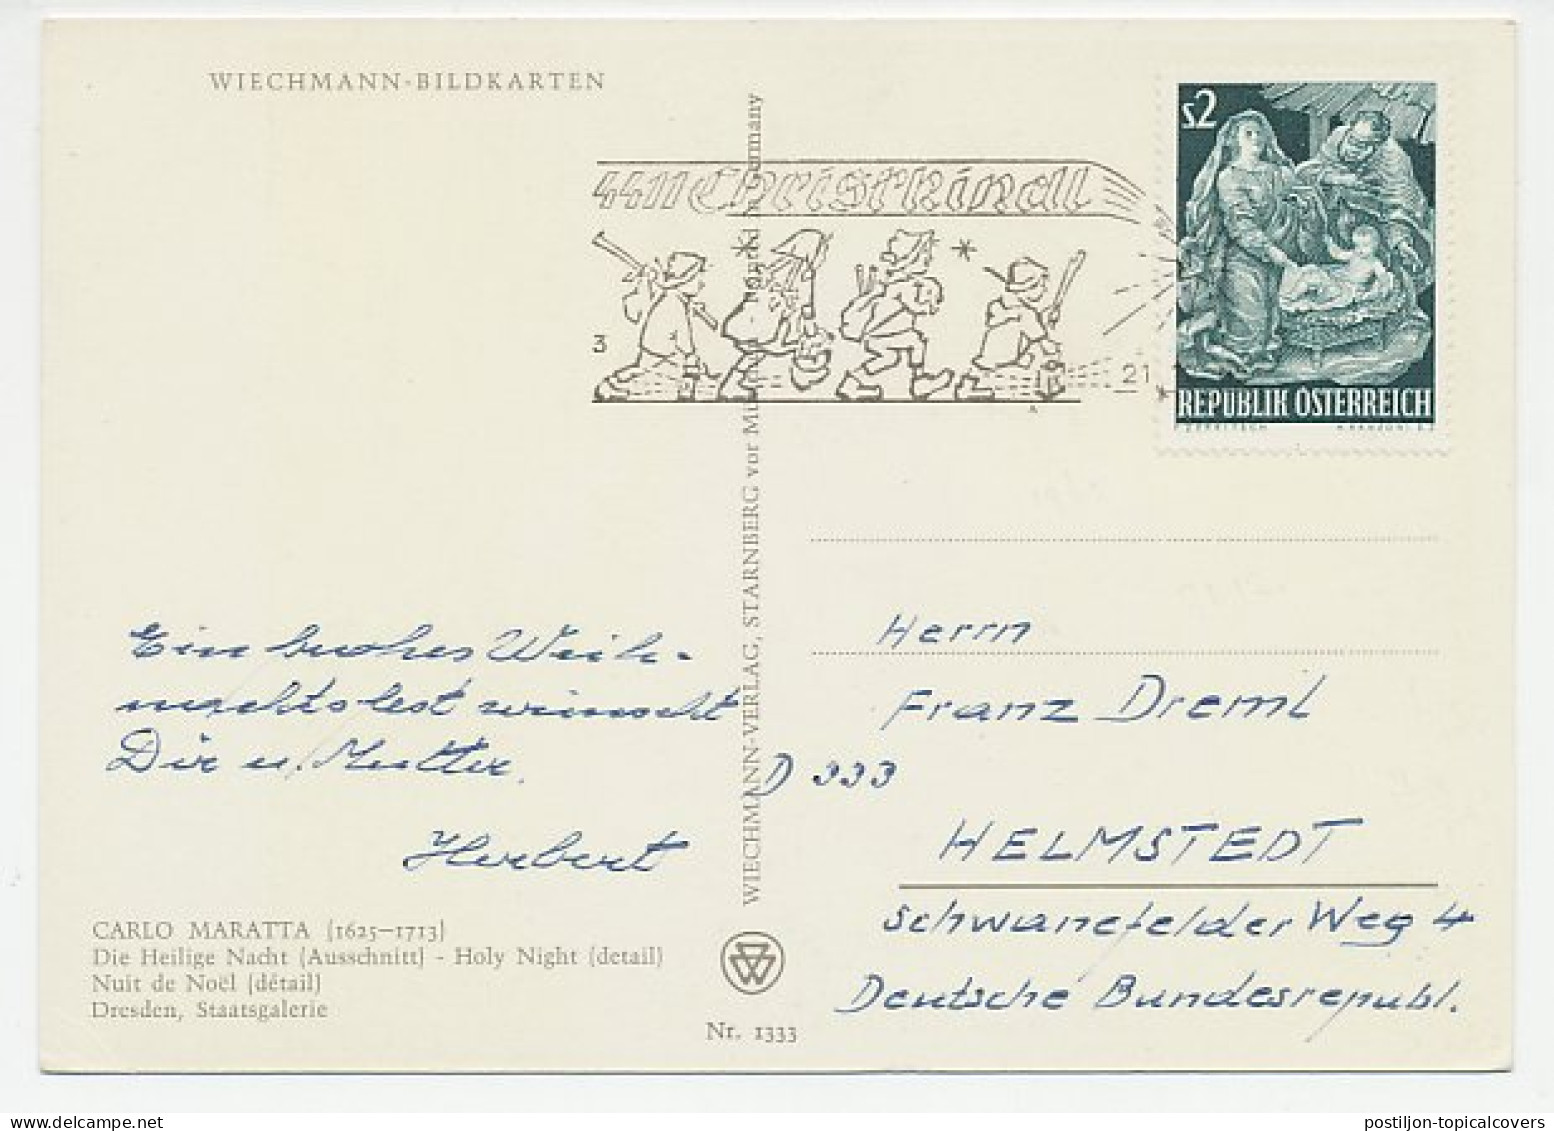 Card / Postmark Austria 1965 Christkindl - Christmas